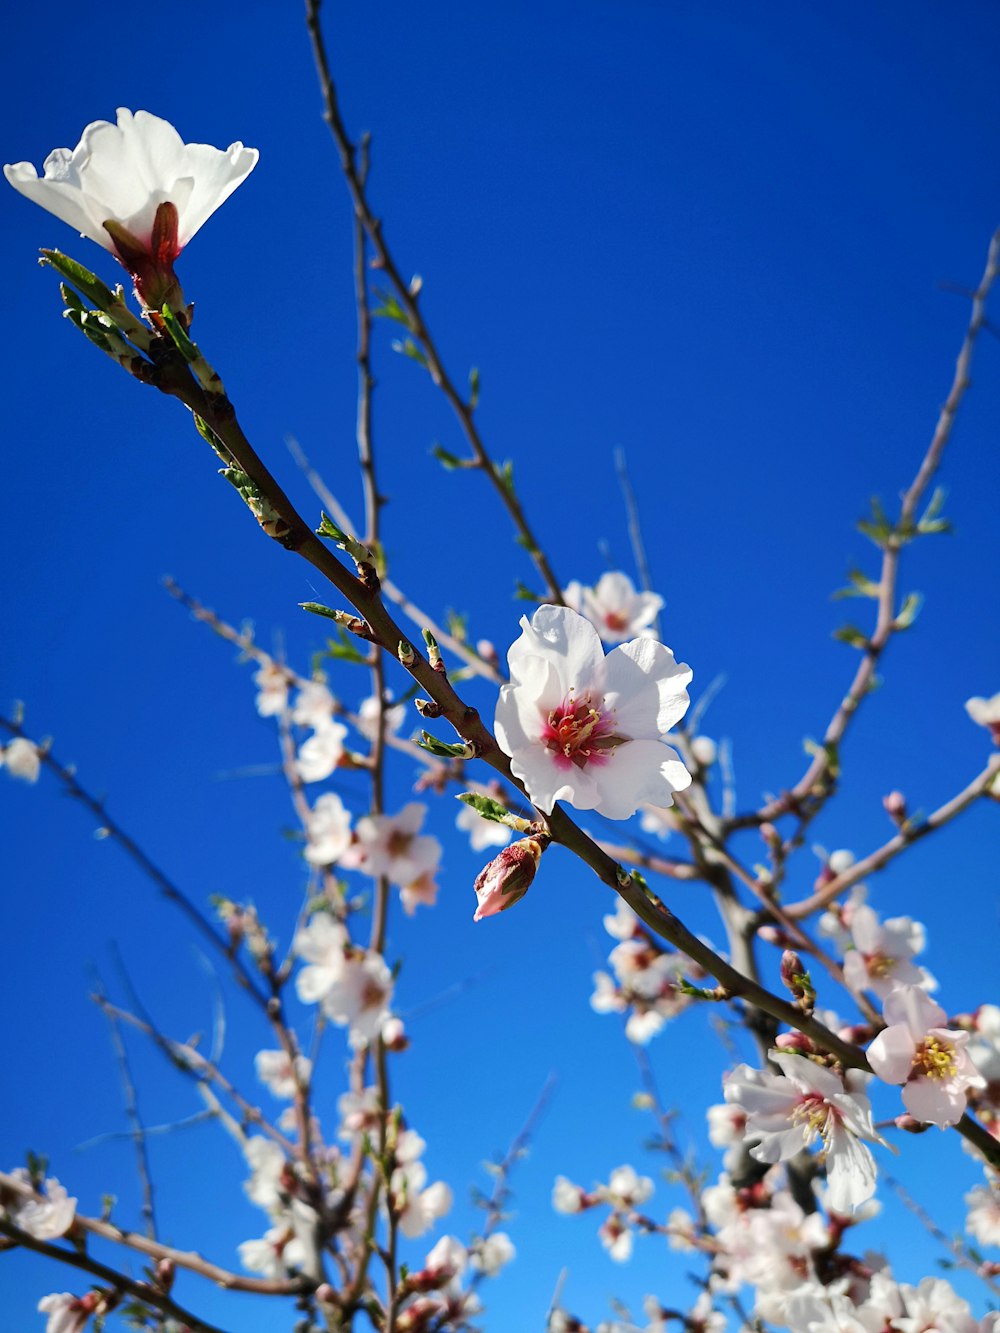 albero di ciliegio in fiore sotto il cielo blu